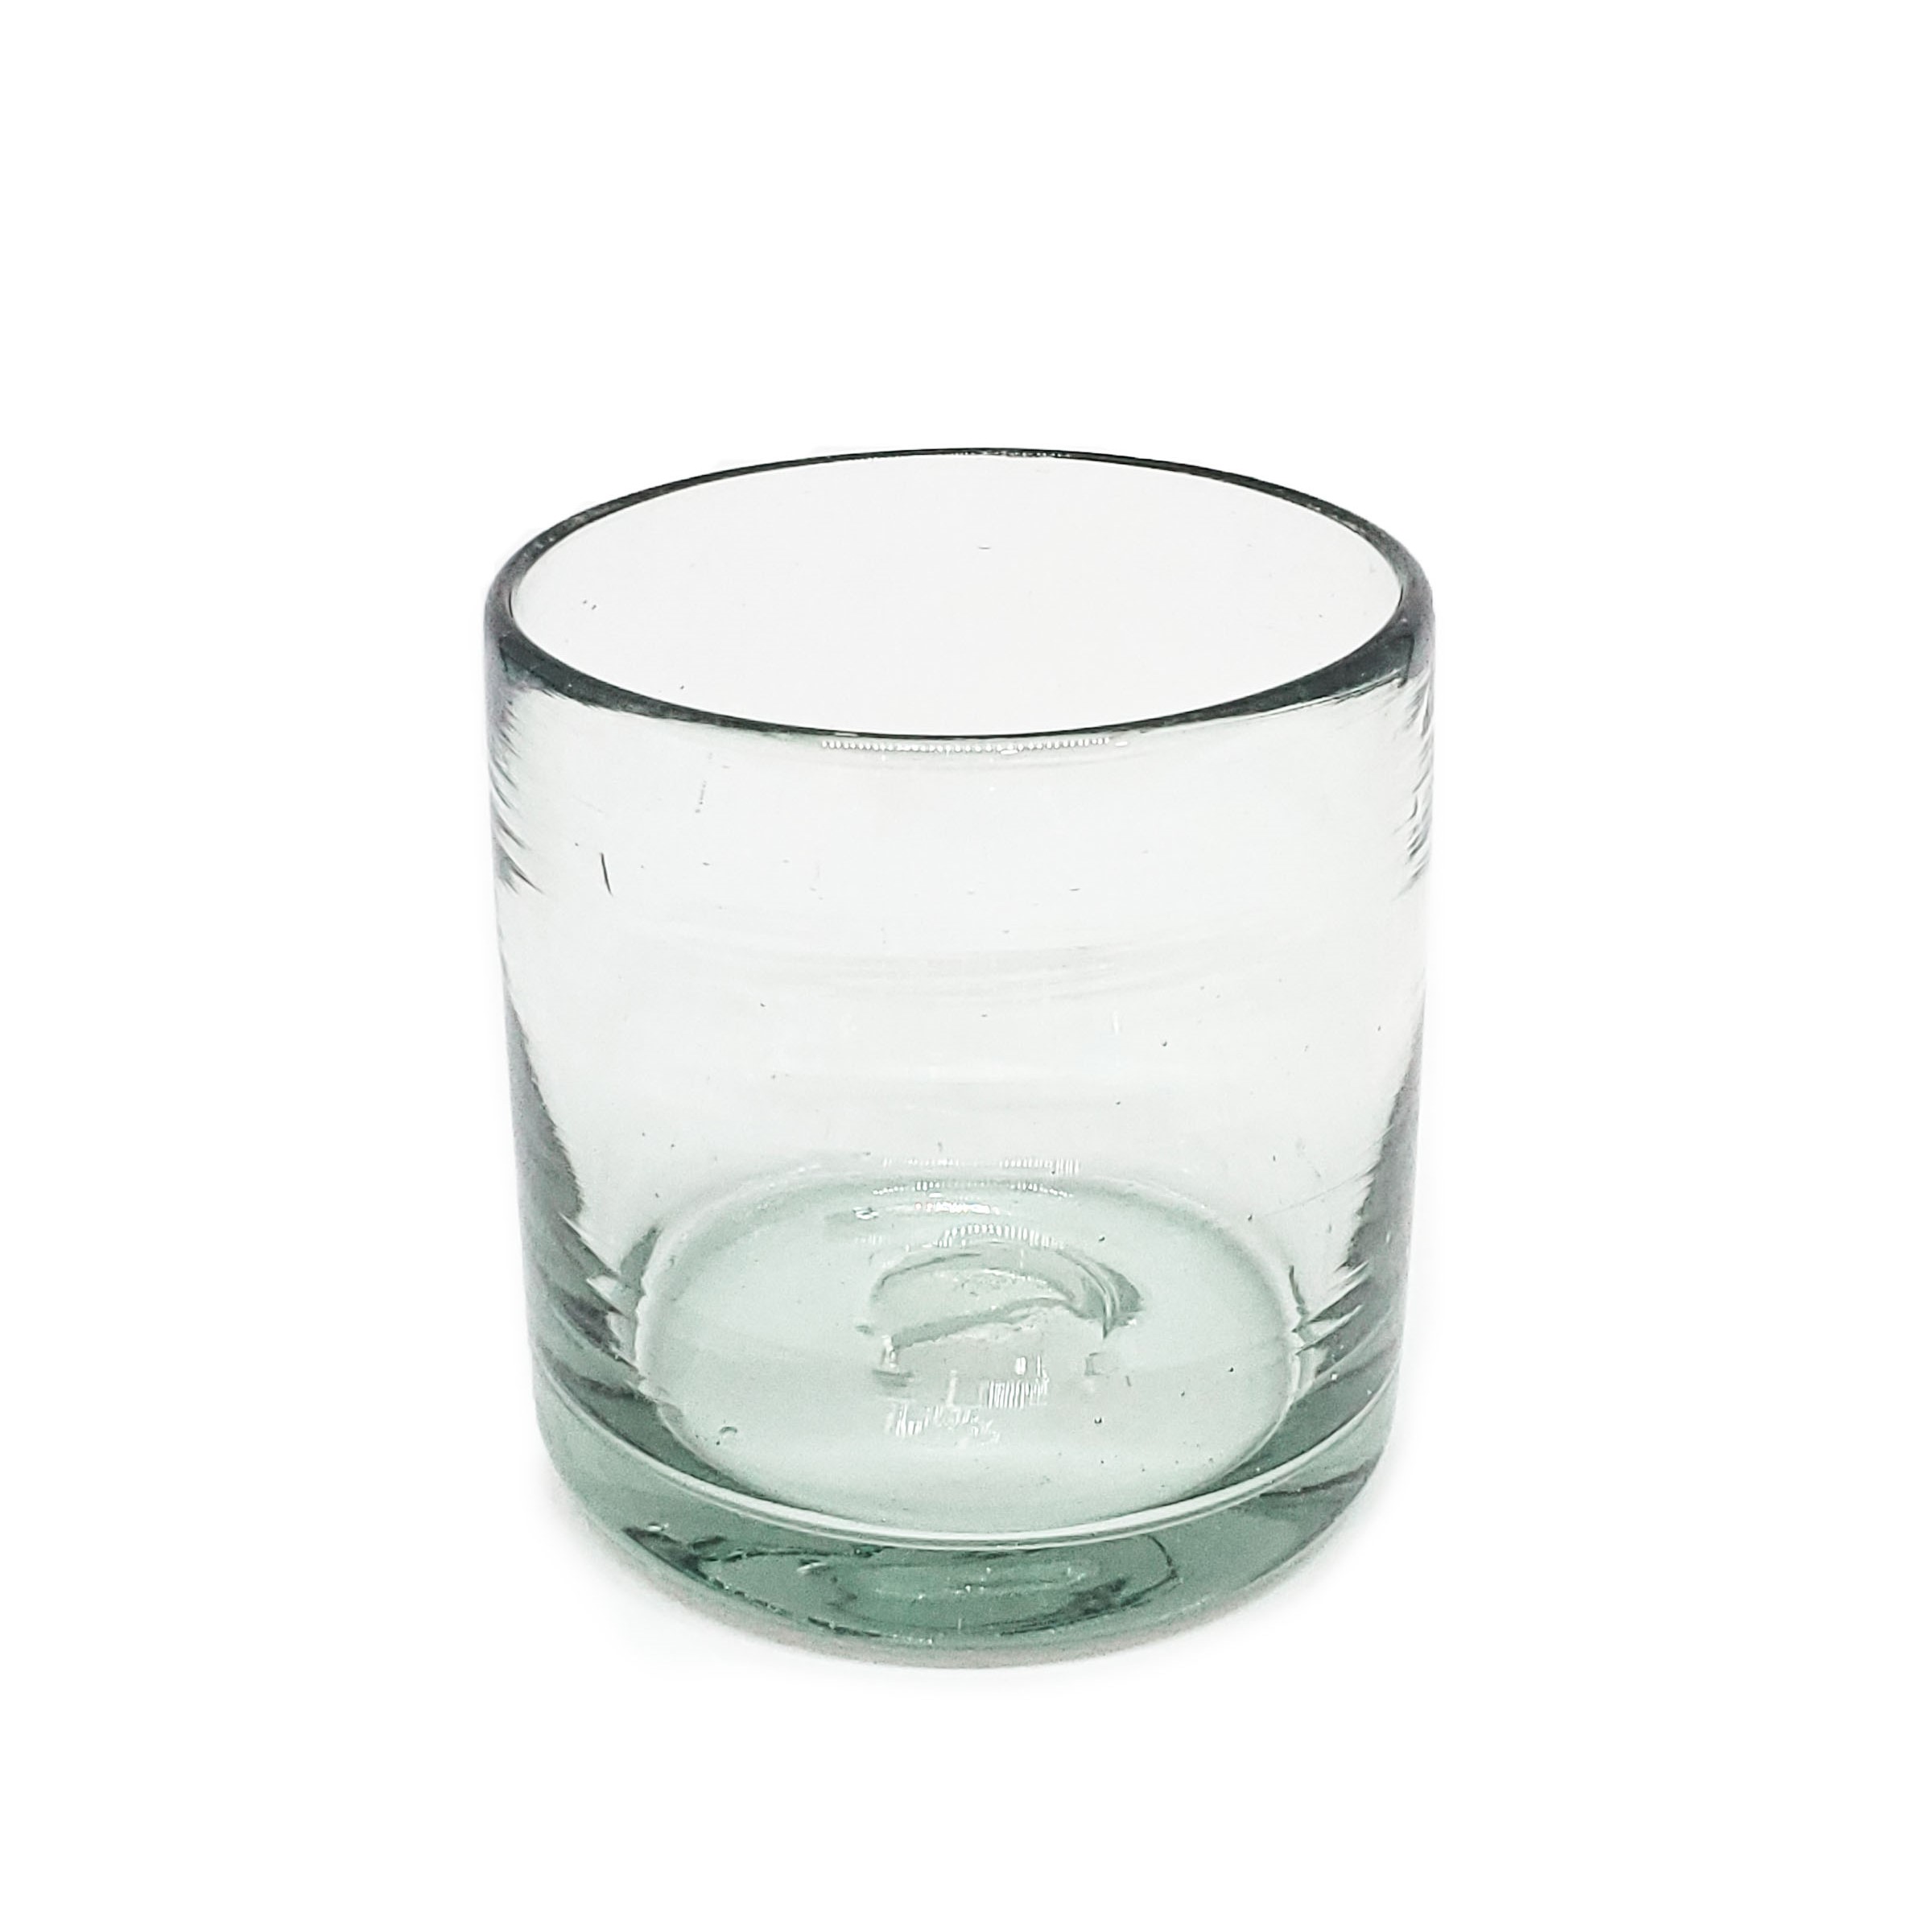 Novedades / Juego de 6 vasos DOF 8oz Transparentes / Éstos artesanales vasos le darán un toque clásico a su bebida favorita.